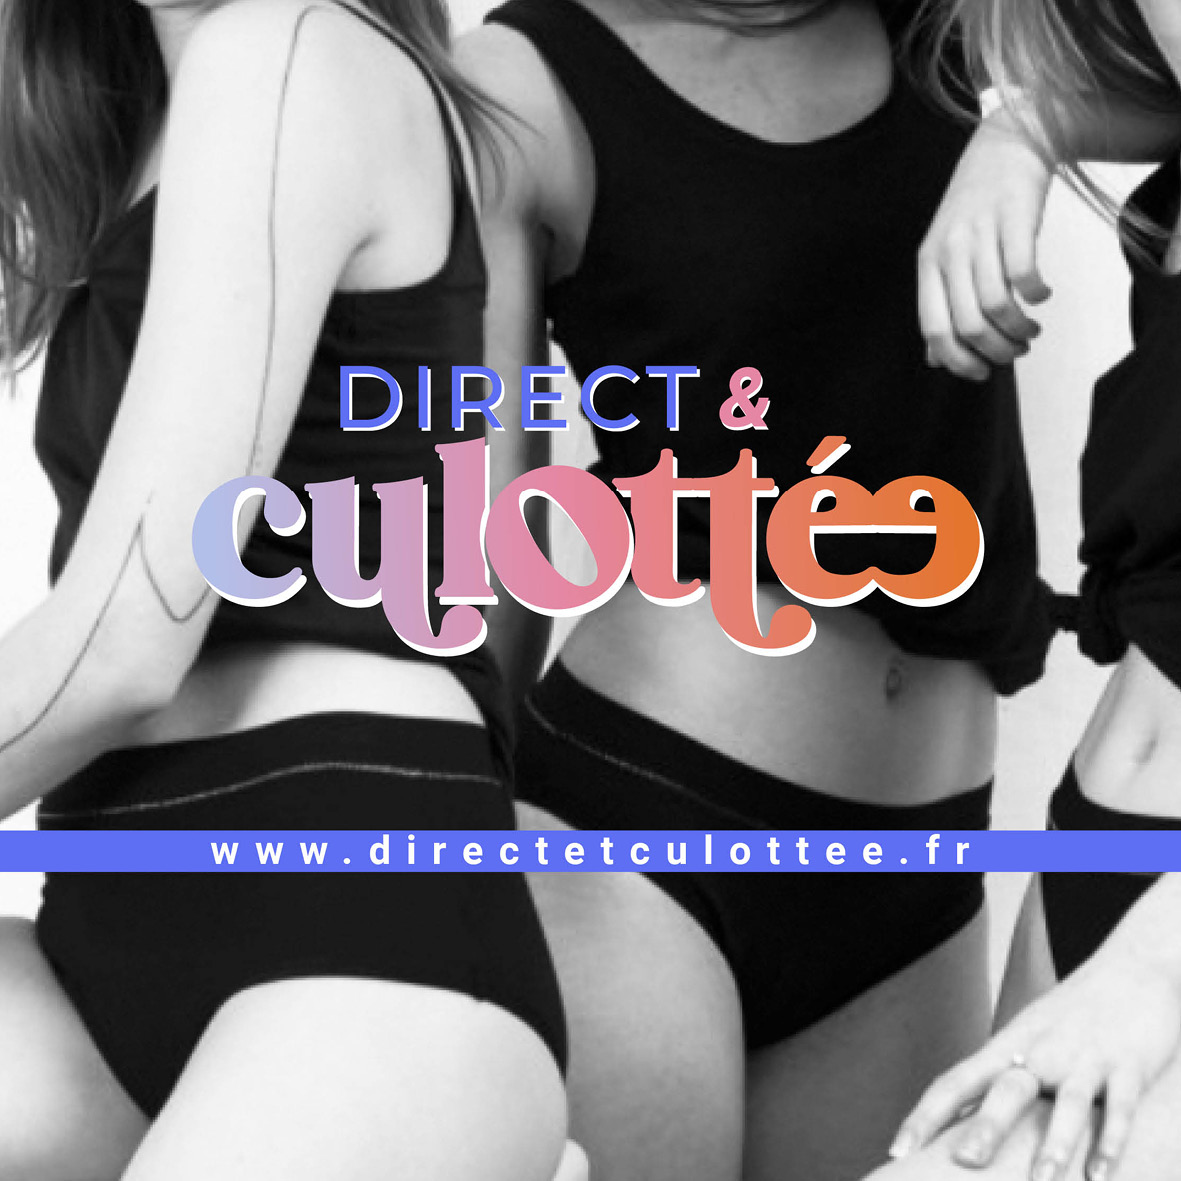 logo direct & culottée en couleur marque de lingerie menstruelle sur visuel photo noir et blanc femme en sous vetement plus site internet de l'entreprise www.directetculotee.fr